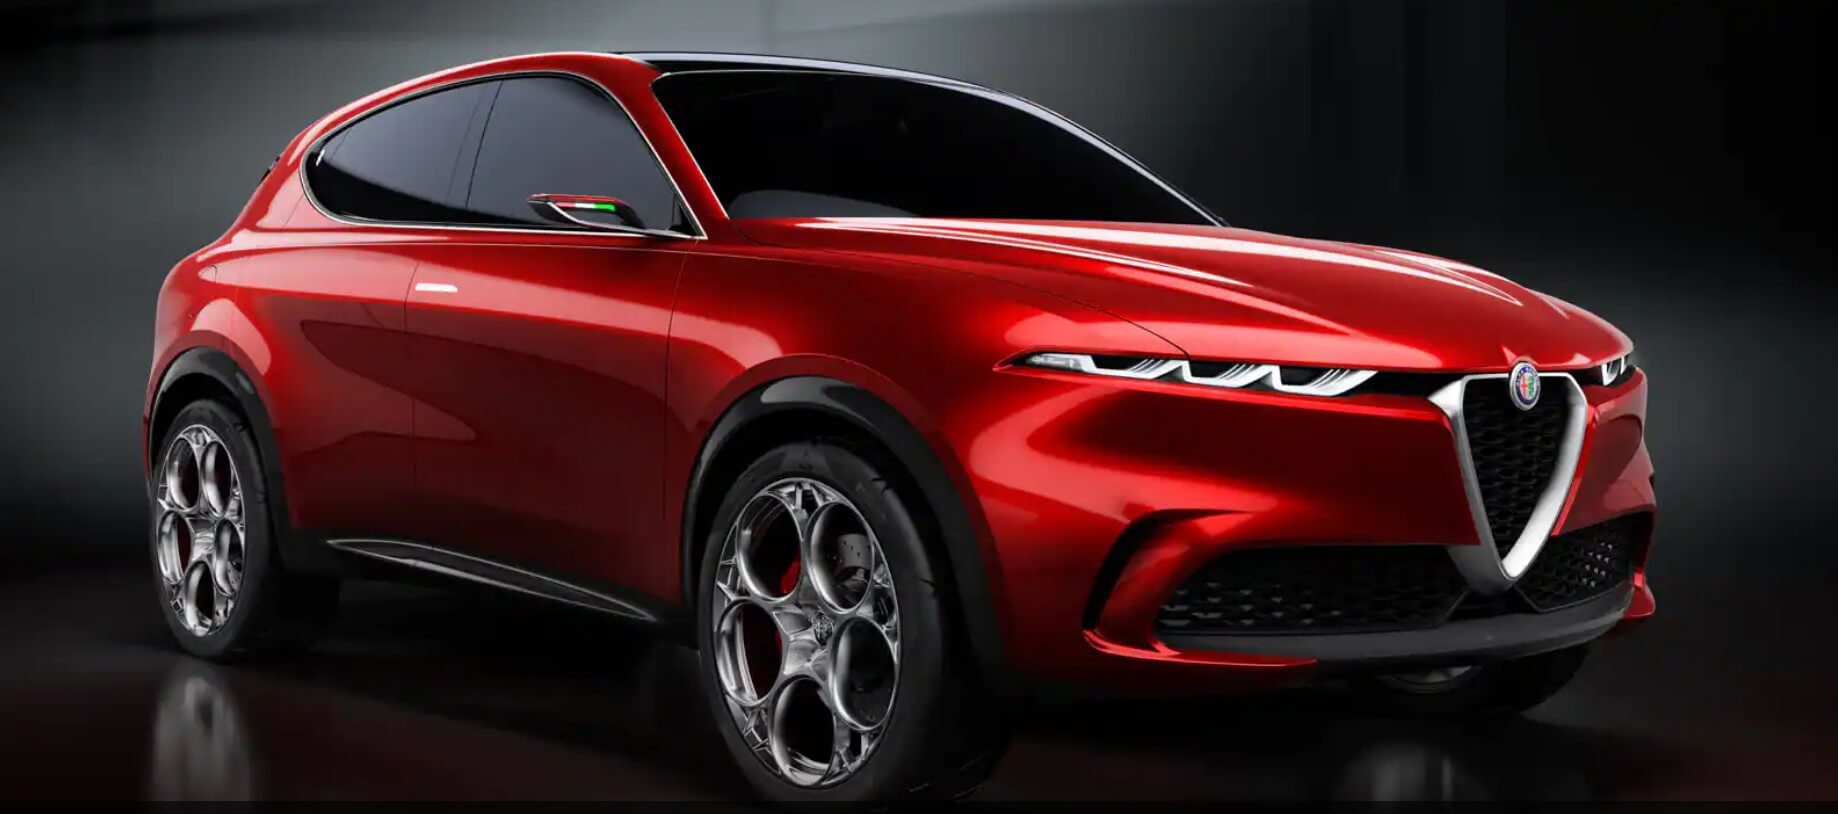 अल्फा रोमियो ने बीएमडब्ल्यू आईएक्स, मर्सिडीज ईक्यूएस को टक्कर देने के लिए एक ईवी एसयूवी बनाने की योजना बनाई है